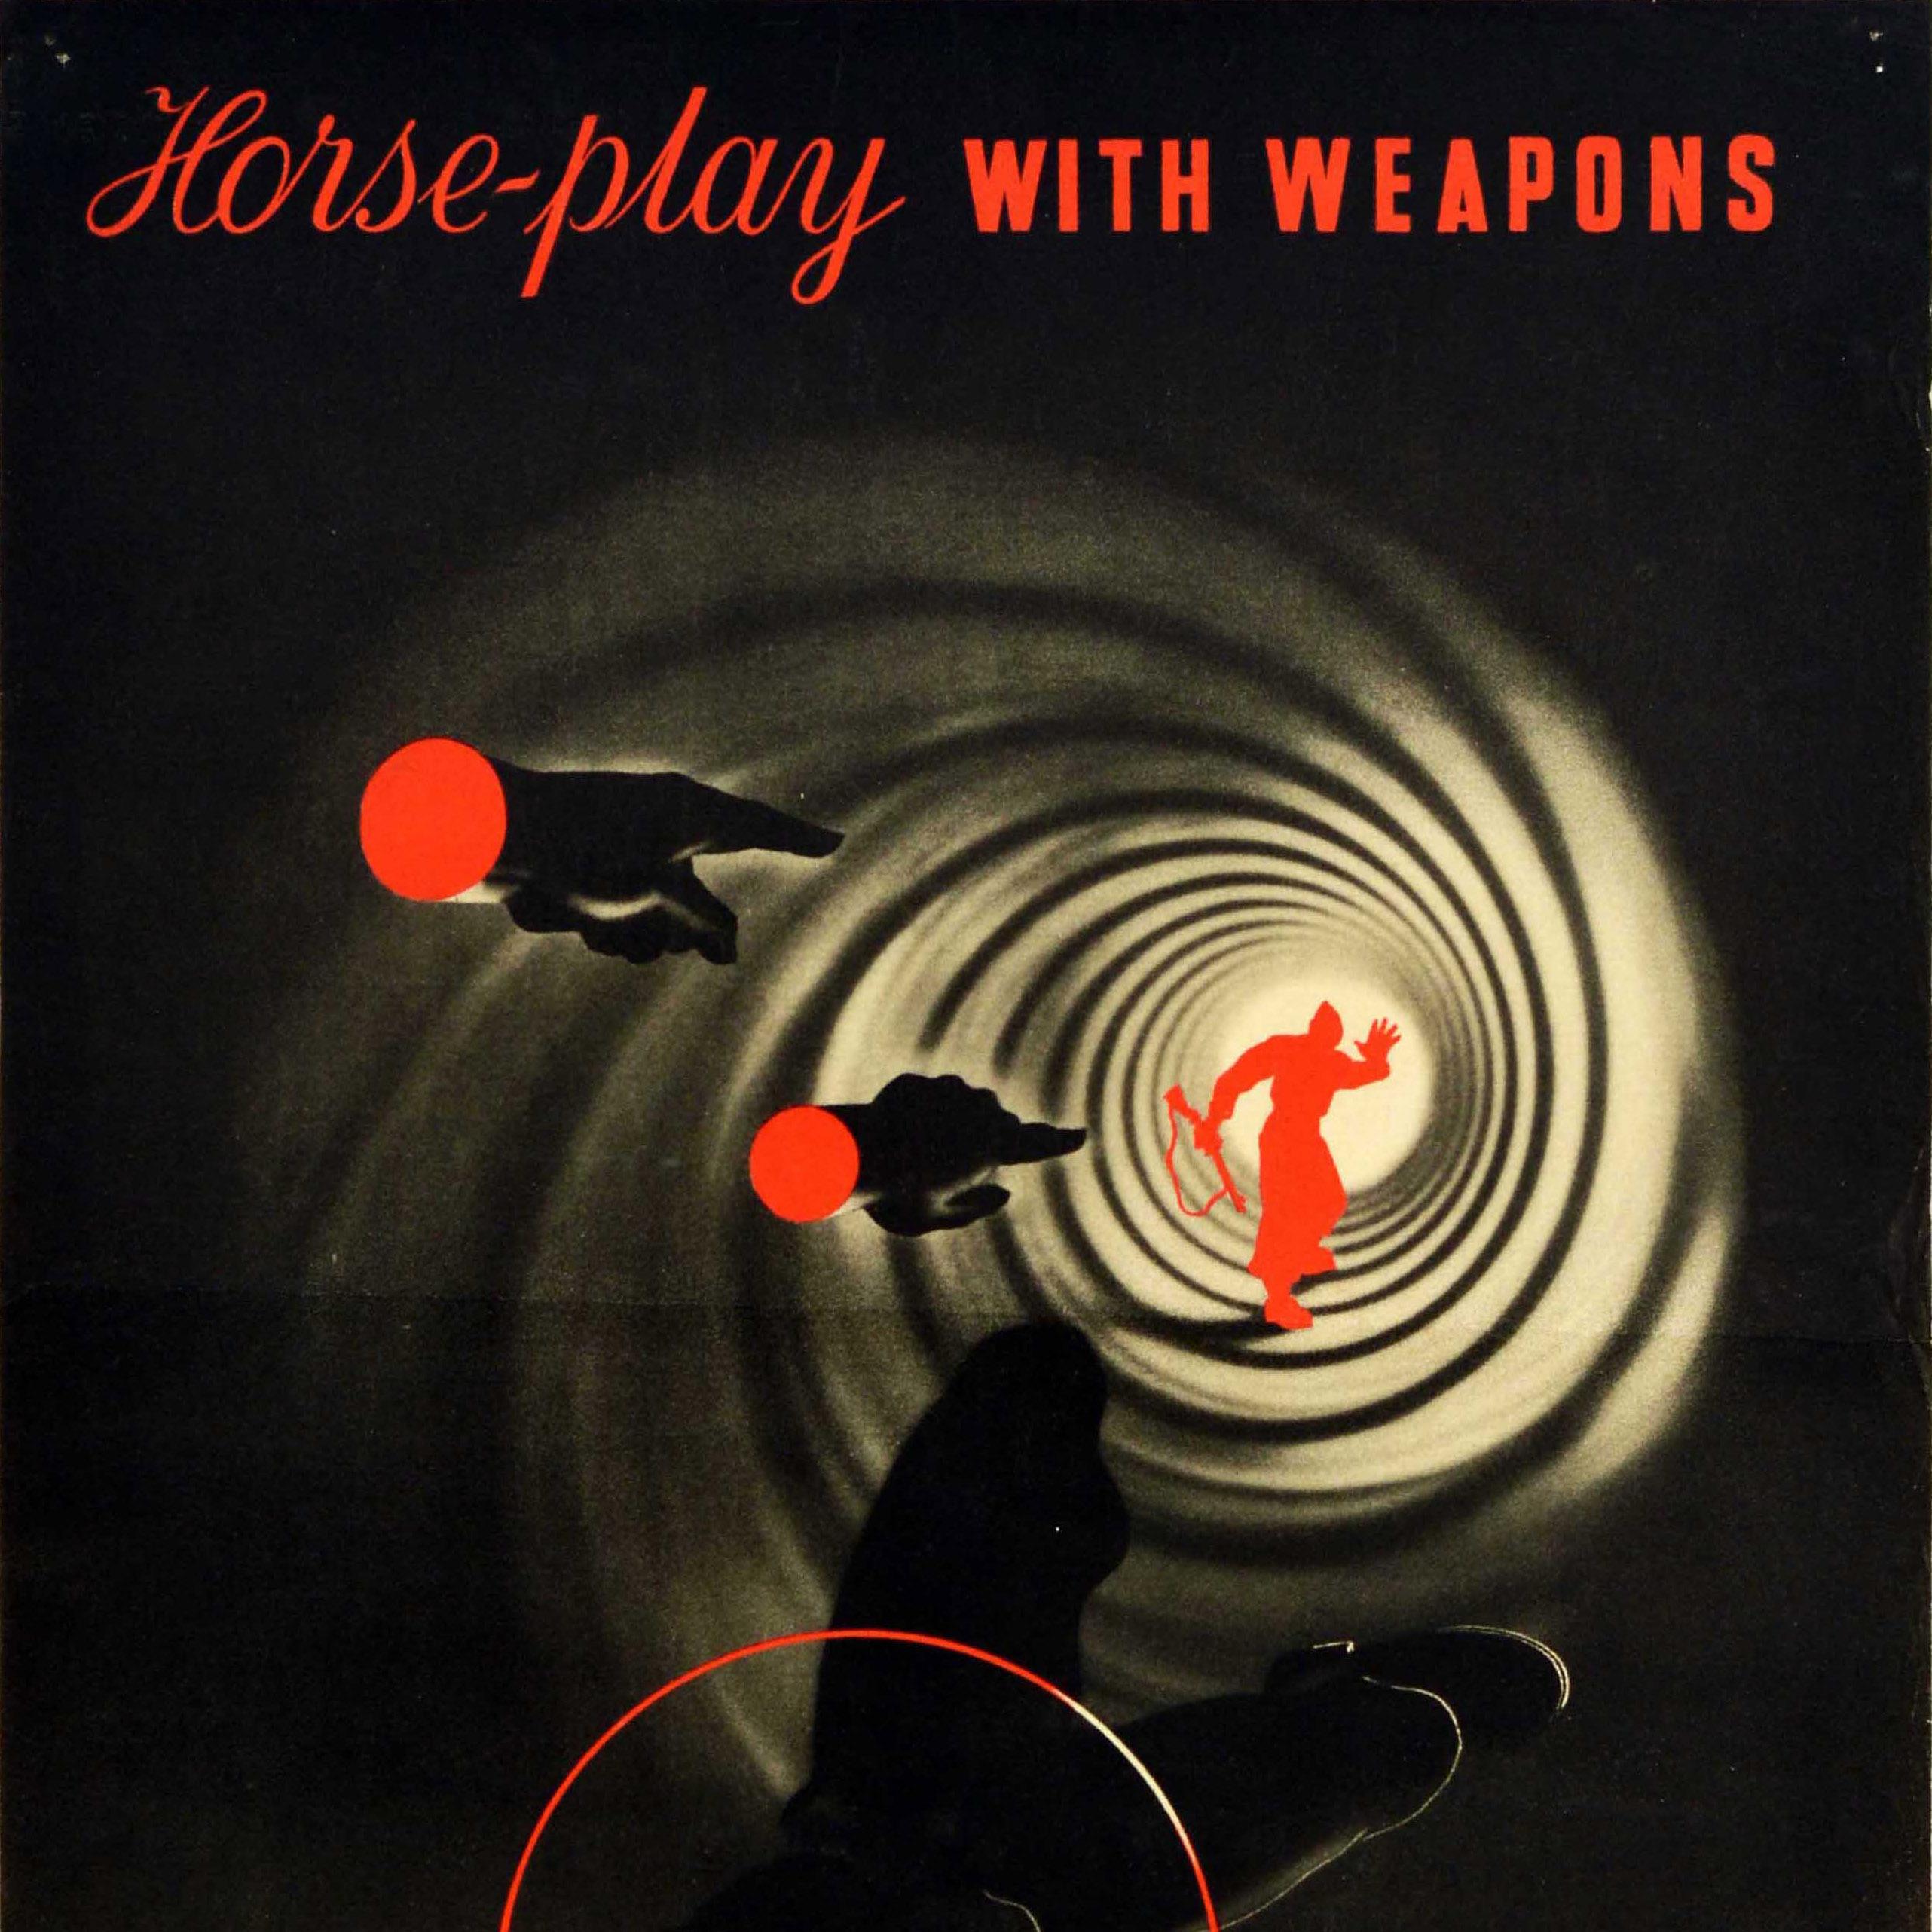 vintage safety poster